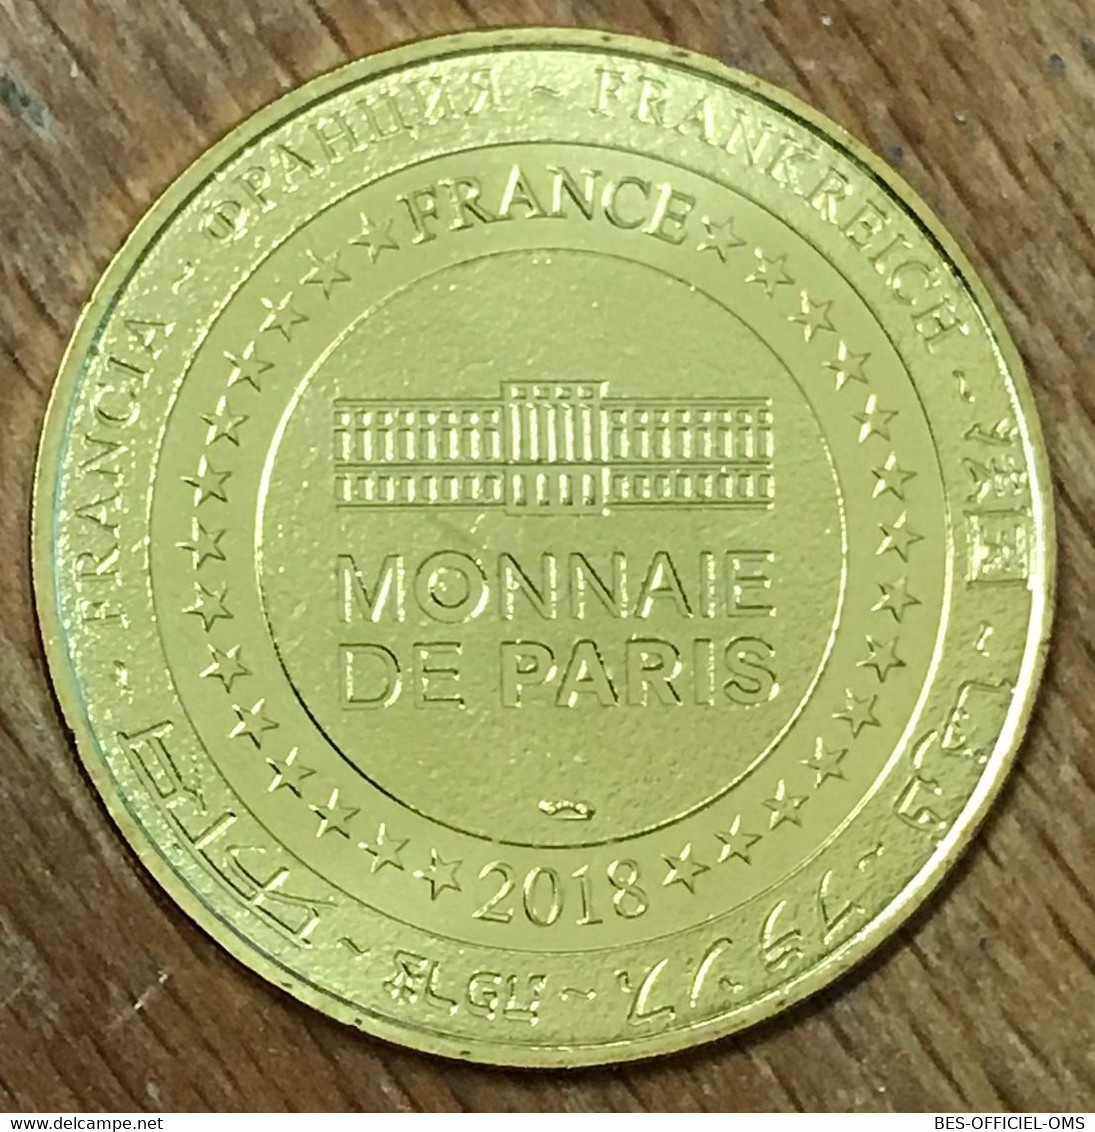 39 SALINS-LES-BAINS LA GRANDE SALINE MDP 2018 MÉDAILLE MONNAIE DE PARIS JETON TOURISTIQUE TOKENS MEDALS COINS - 2018